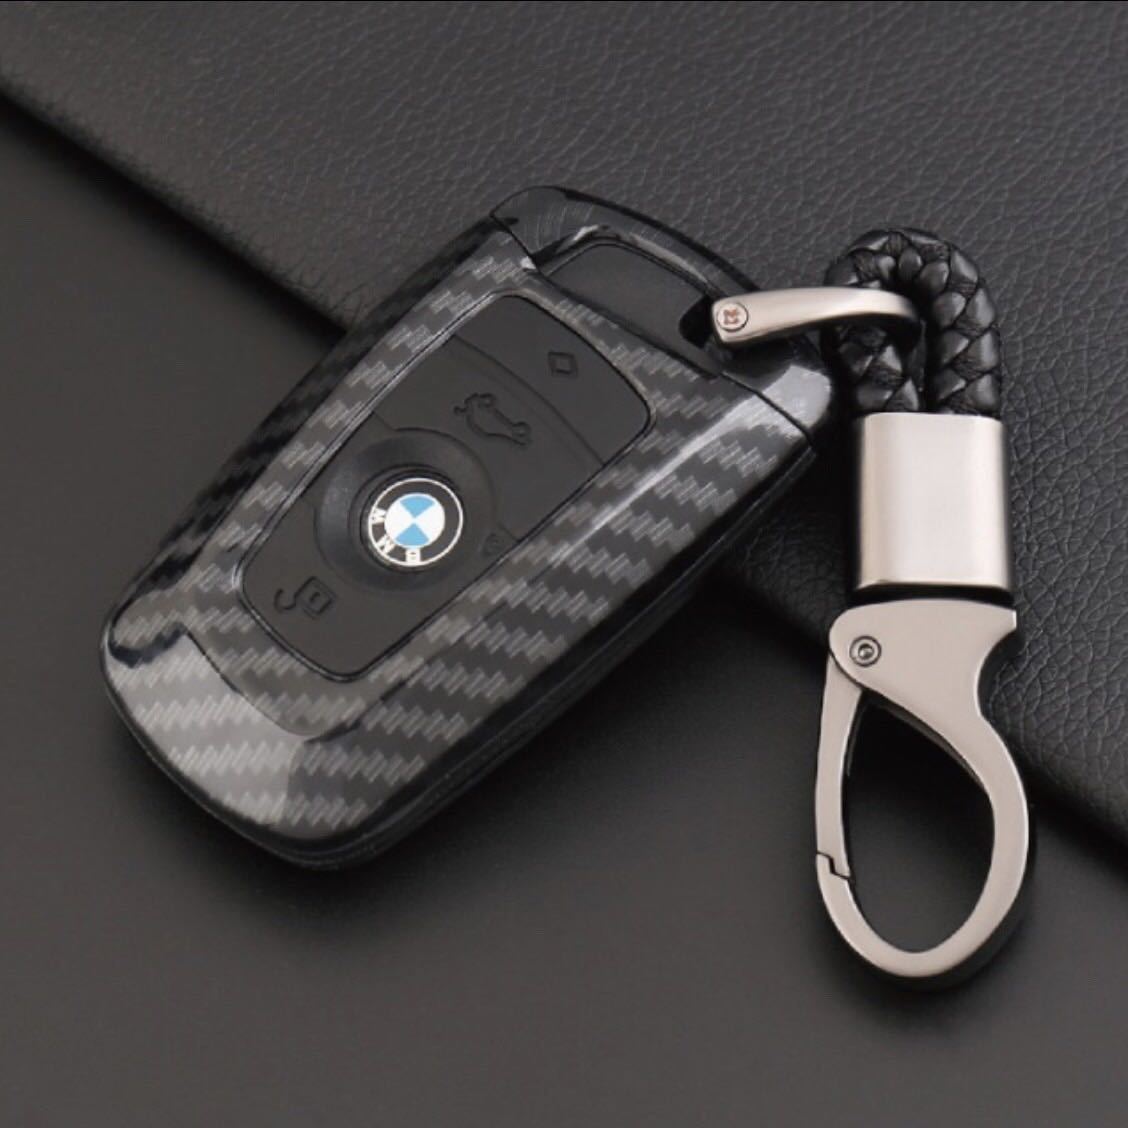 BMW専用 カーボン調 スマートキーケース キーホルダー付き ブラック_画像1